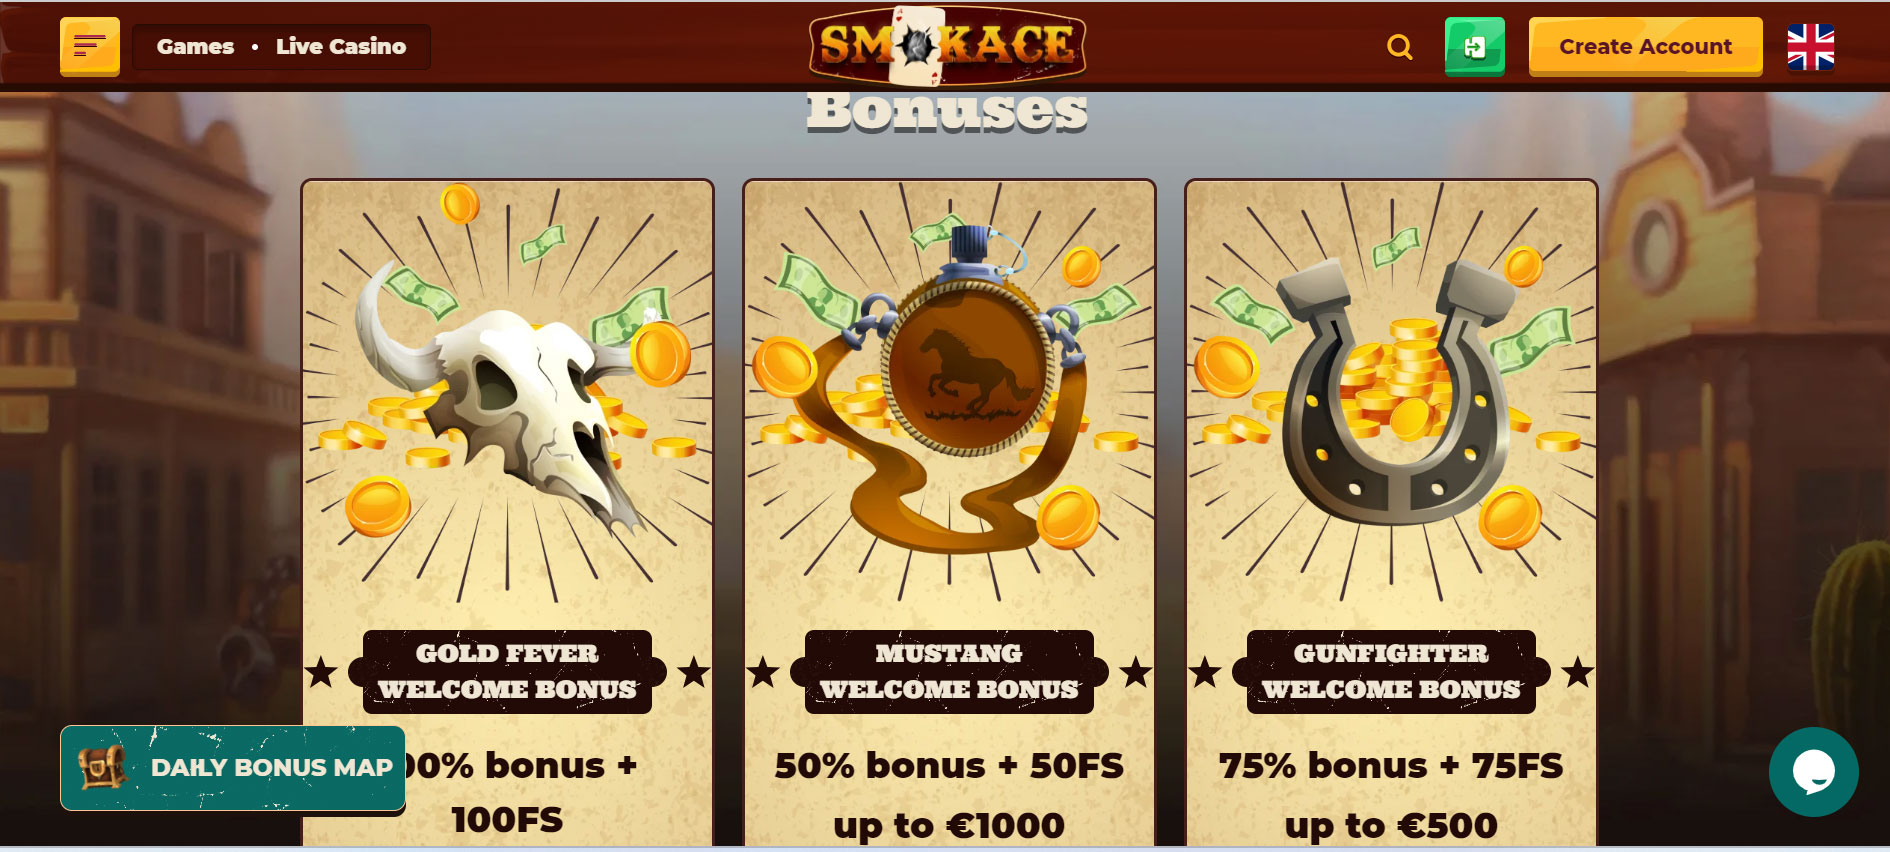 SmokeAce Casino Promotions